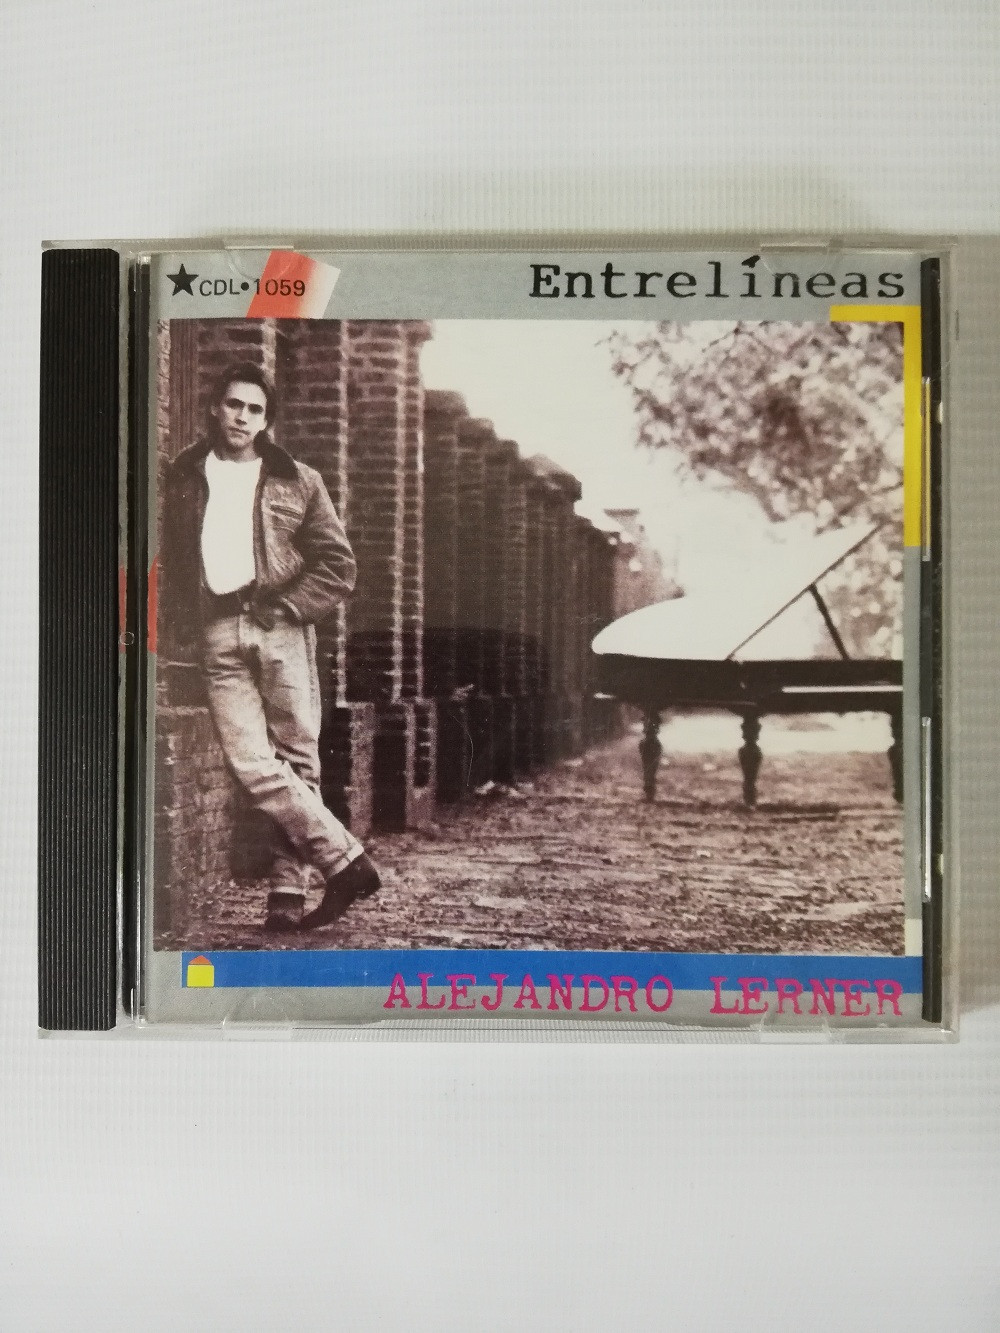 Imagen CD ALEJANDRO LERNER - ENTRE LINEAS 1